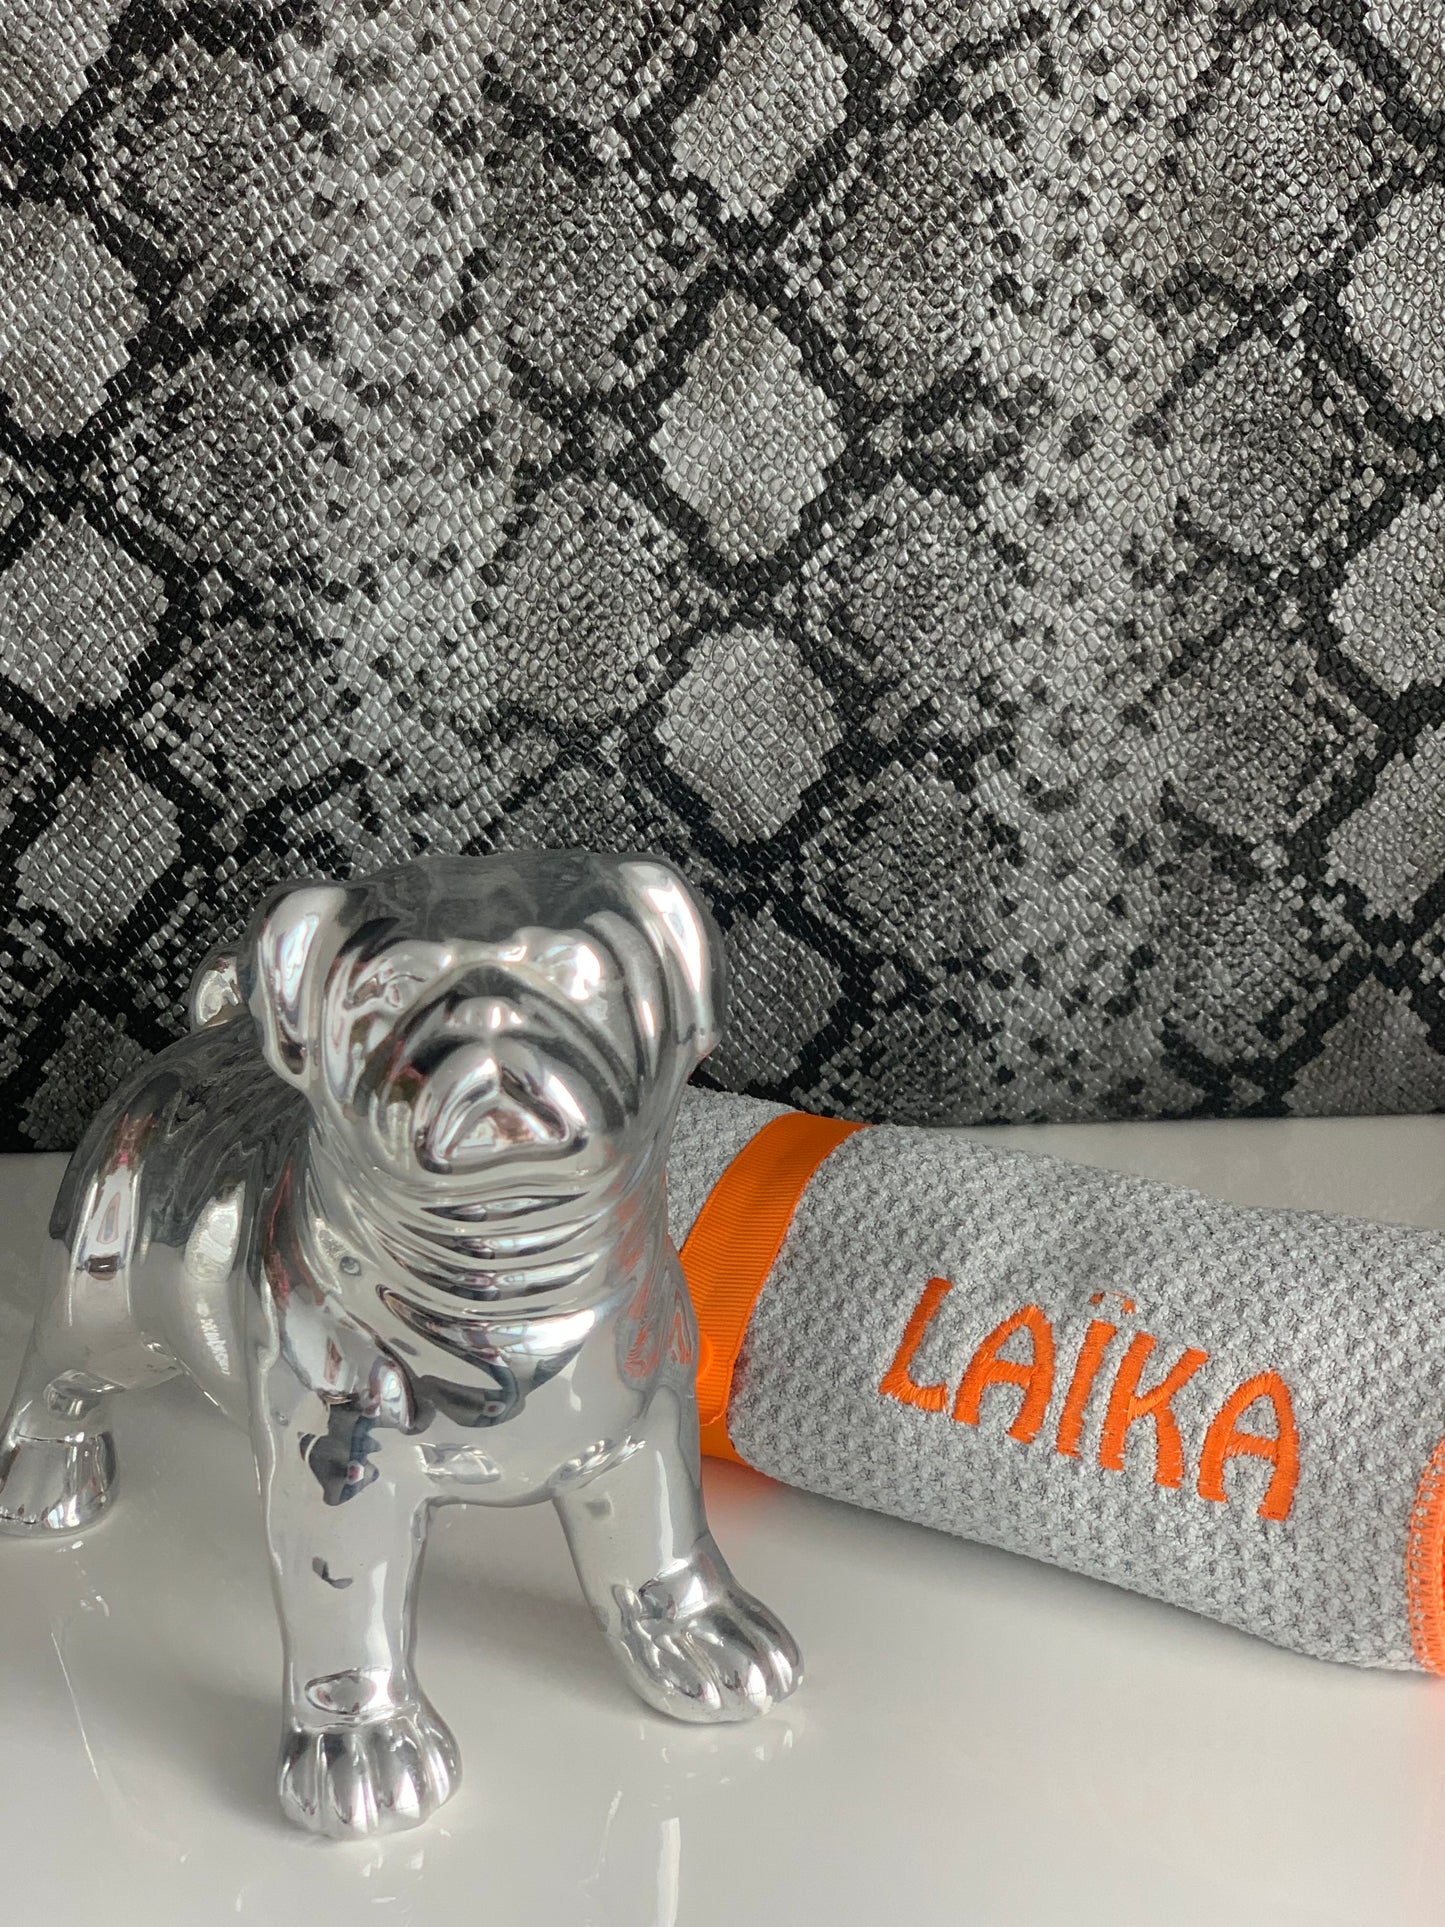 Mascosana - Pet Towel - personalisierts, saugstarkes Handtuch für Hunde, Katzen und Pferde - in grau mit farbiger Beschriftung